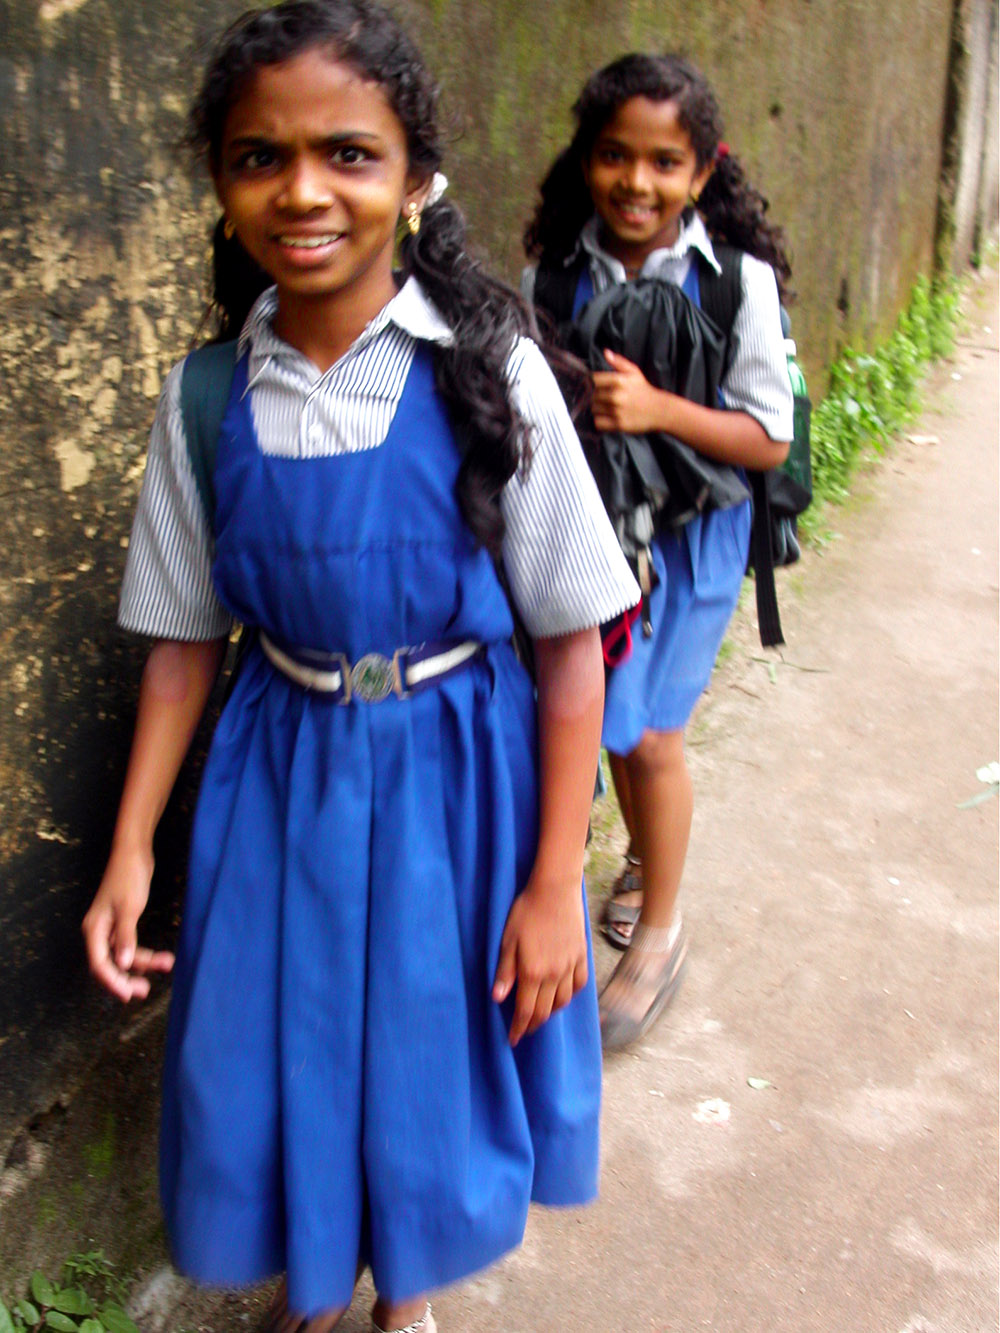 india/cochin_girls_walking